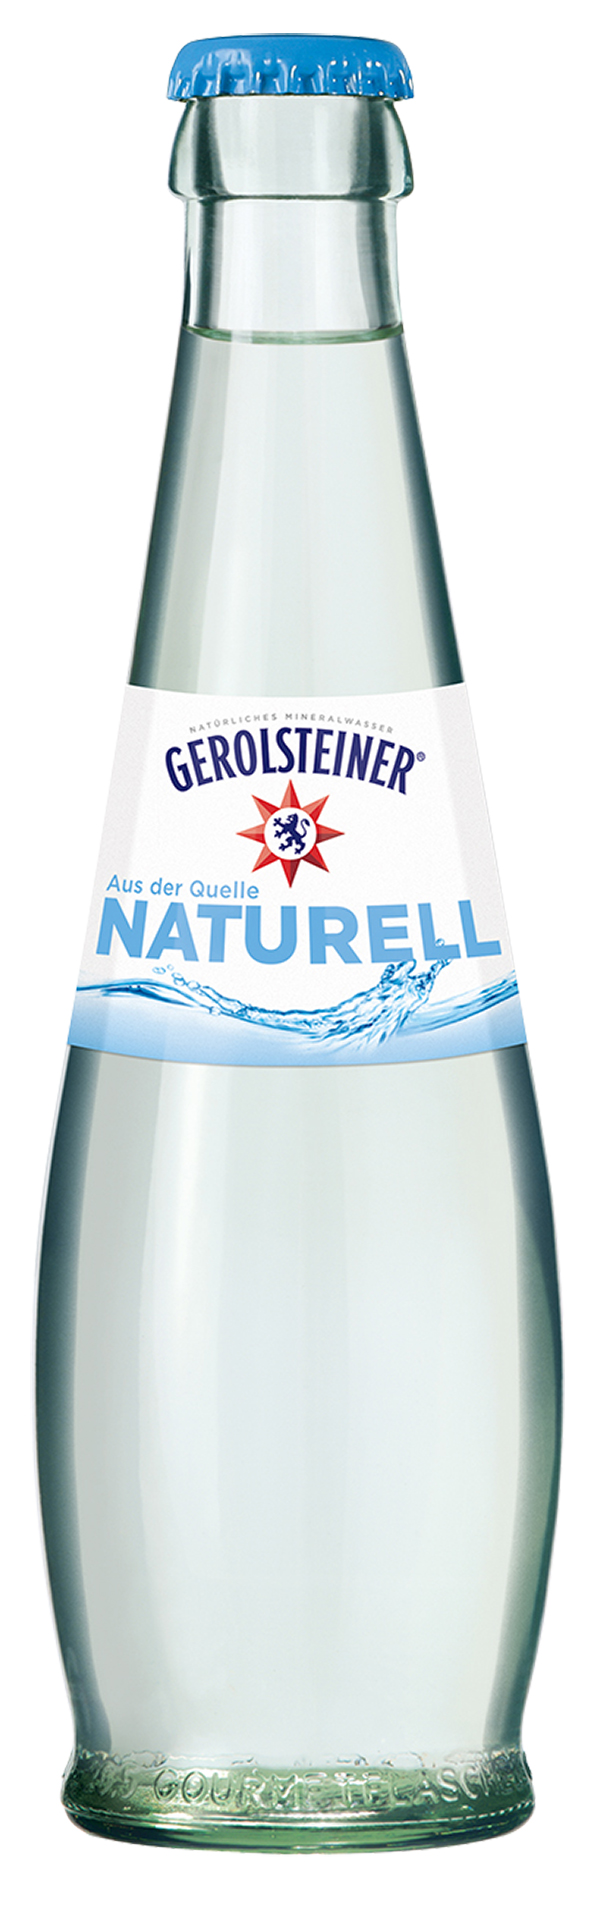 Gerolsteiner Naturell Gourmet 24 x 0,25 l (Glas)